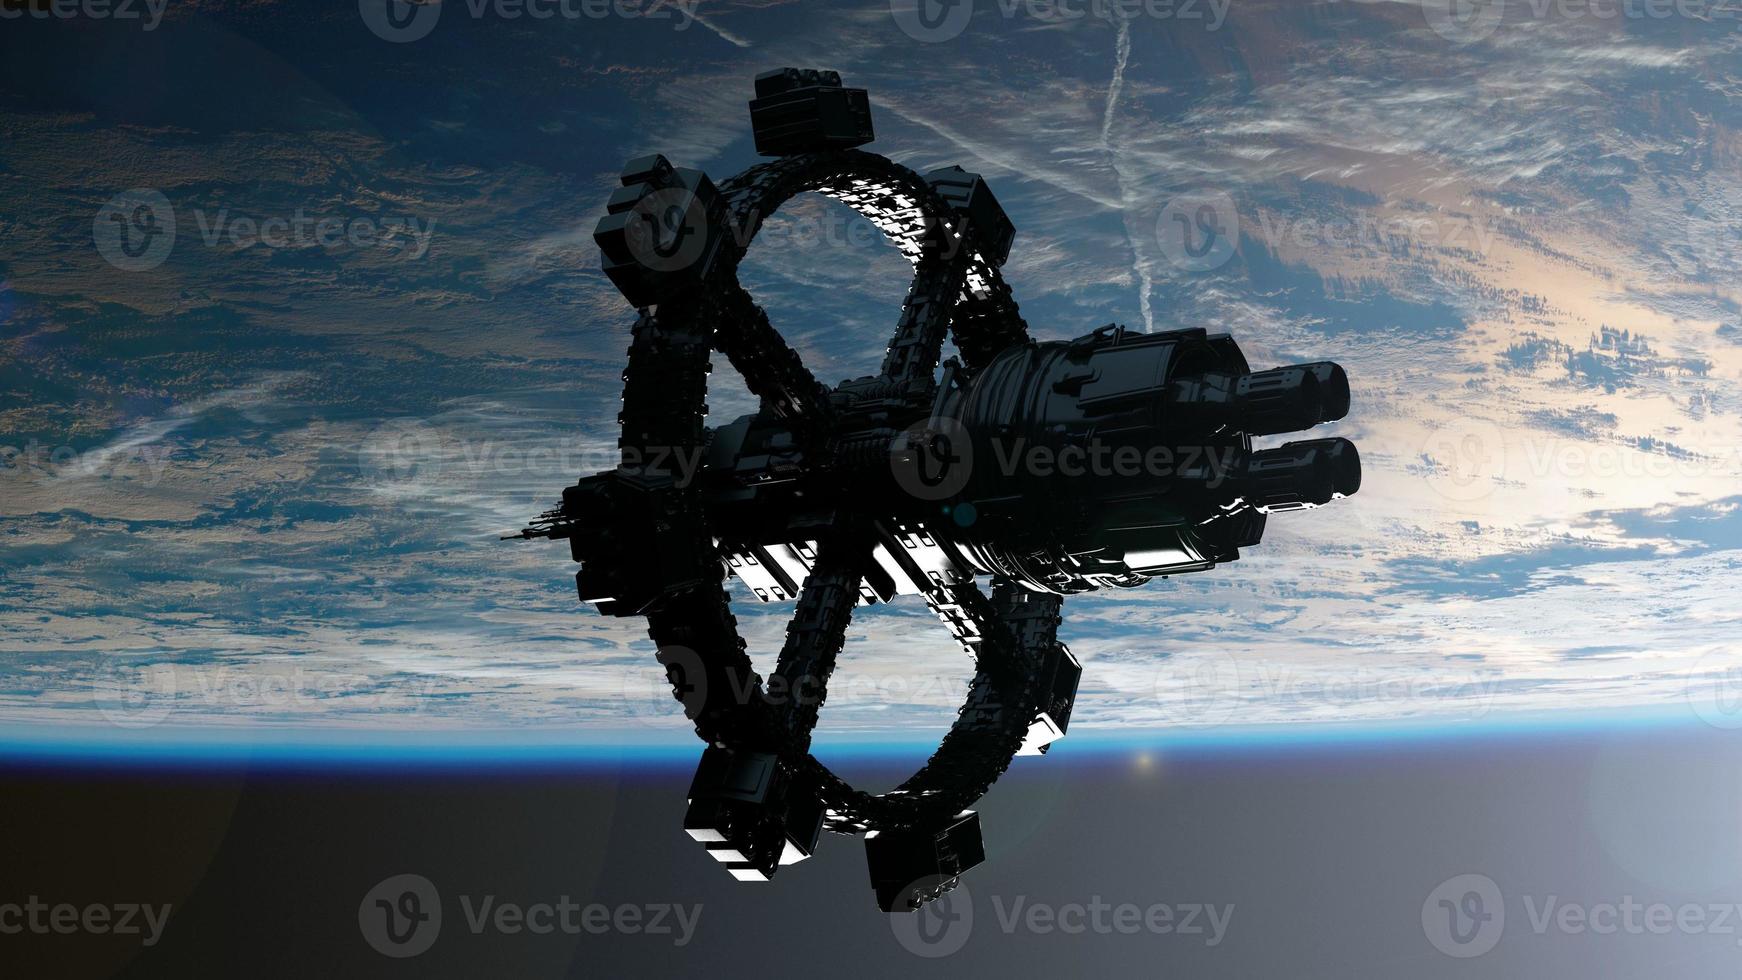 rymdstation som kretsar runt jorden. delar av denna bild från nasa foto